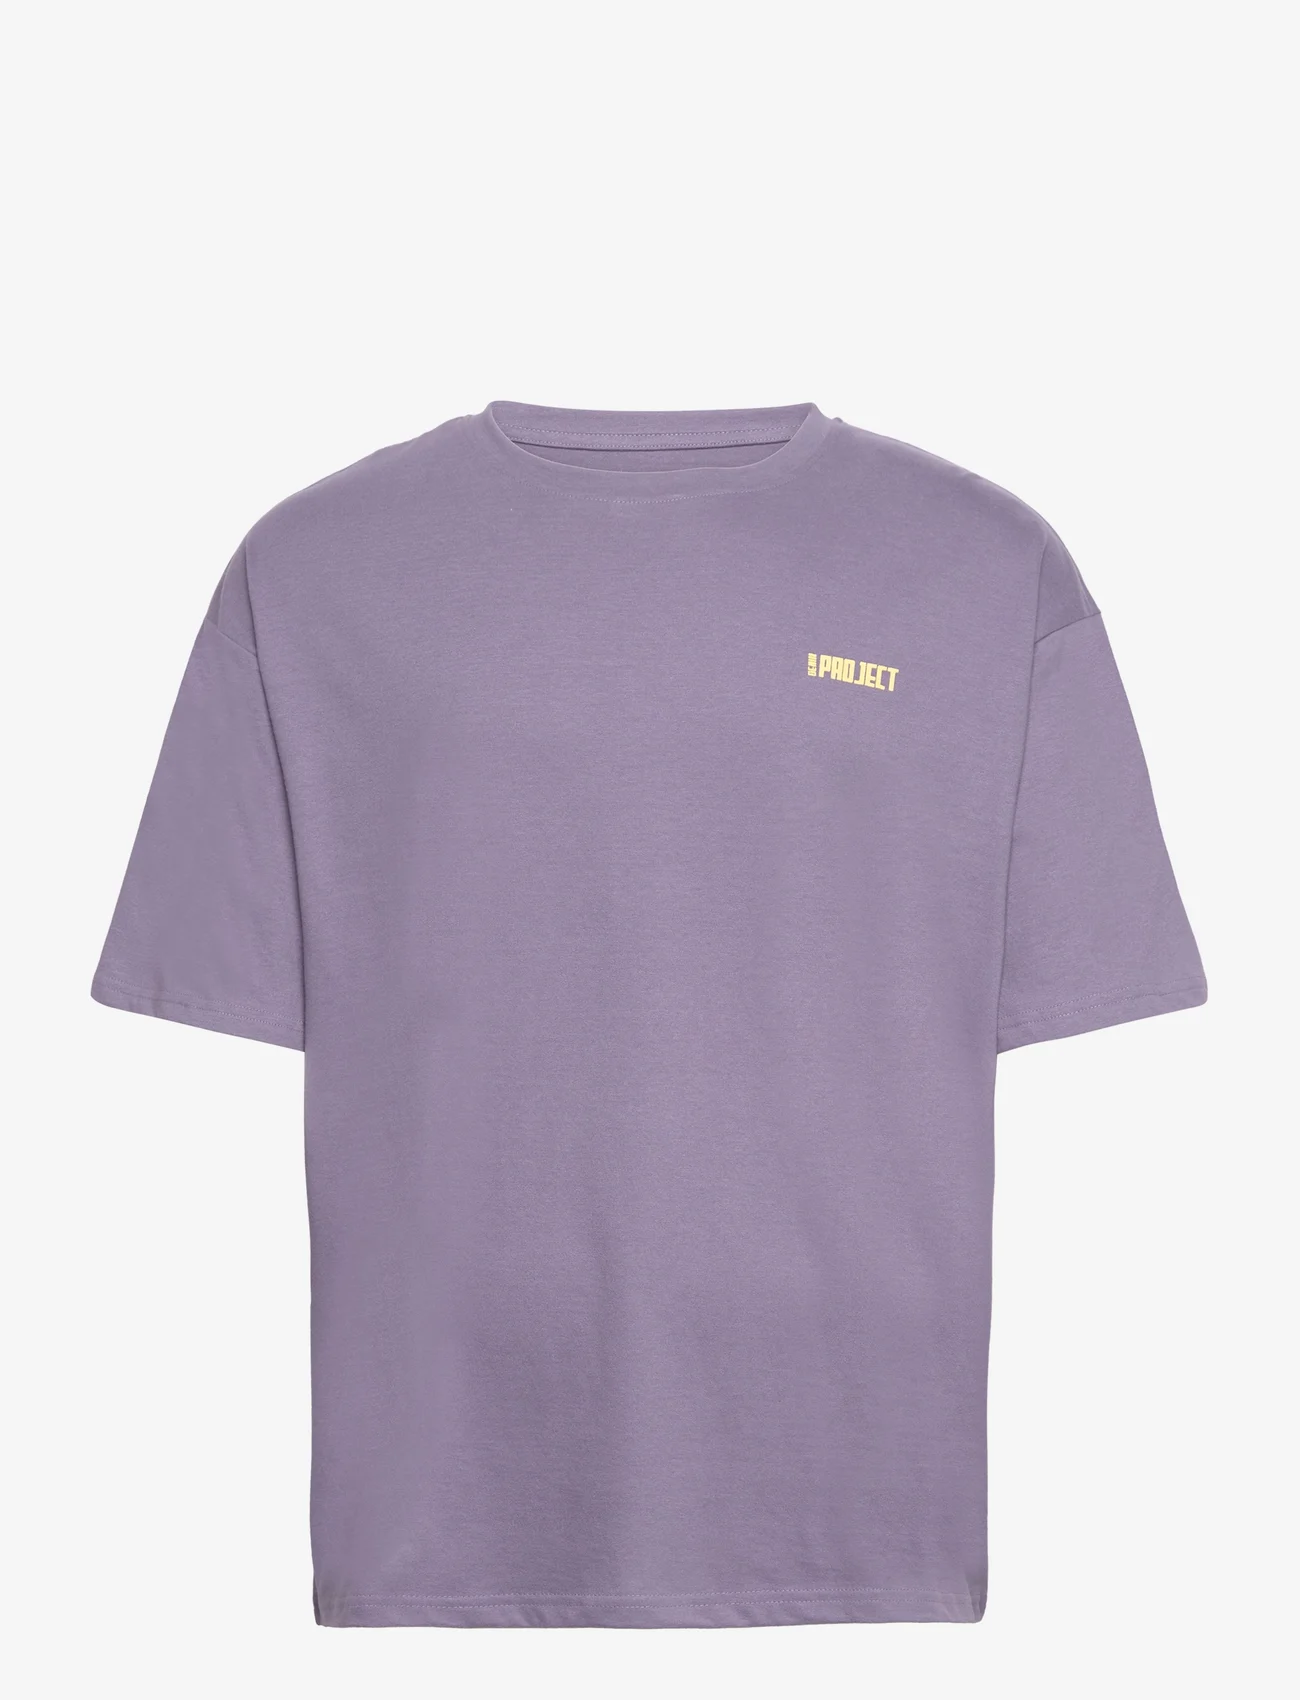 Denim project - DPSignature Print T-Shirt - madalaimad hinnad - cadet purple - 0